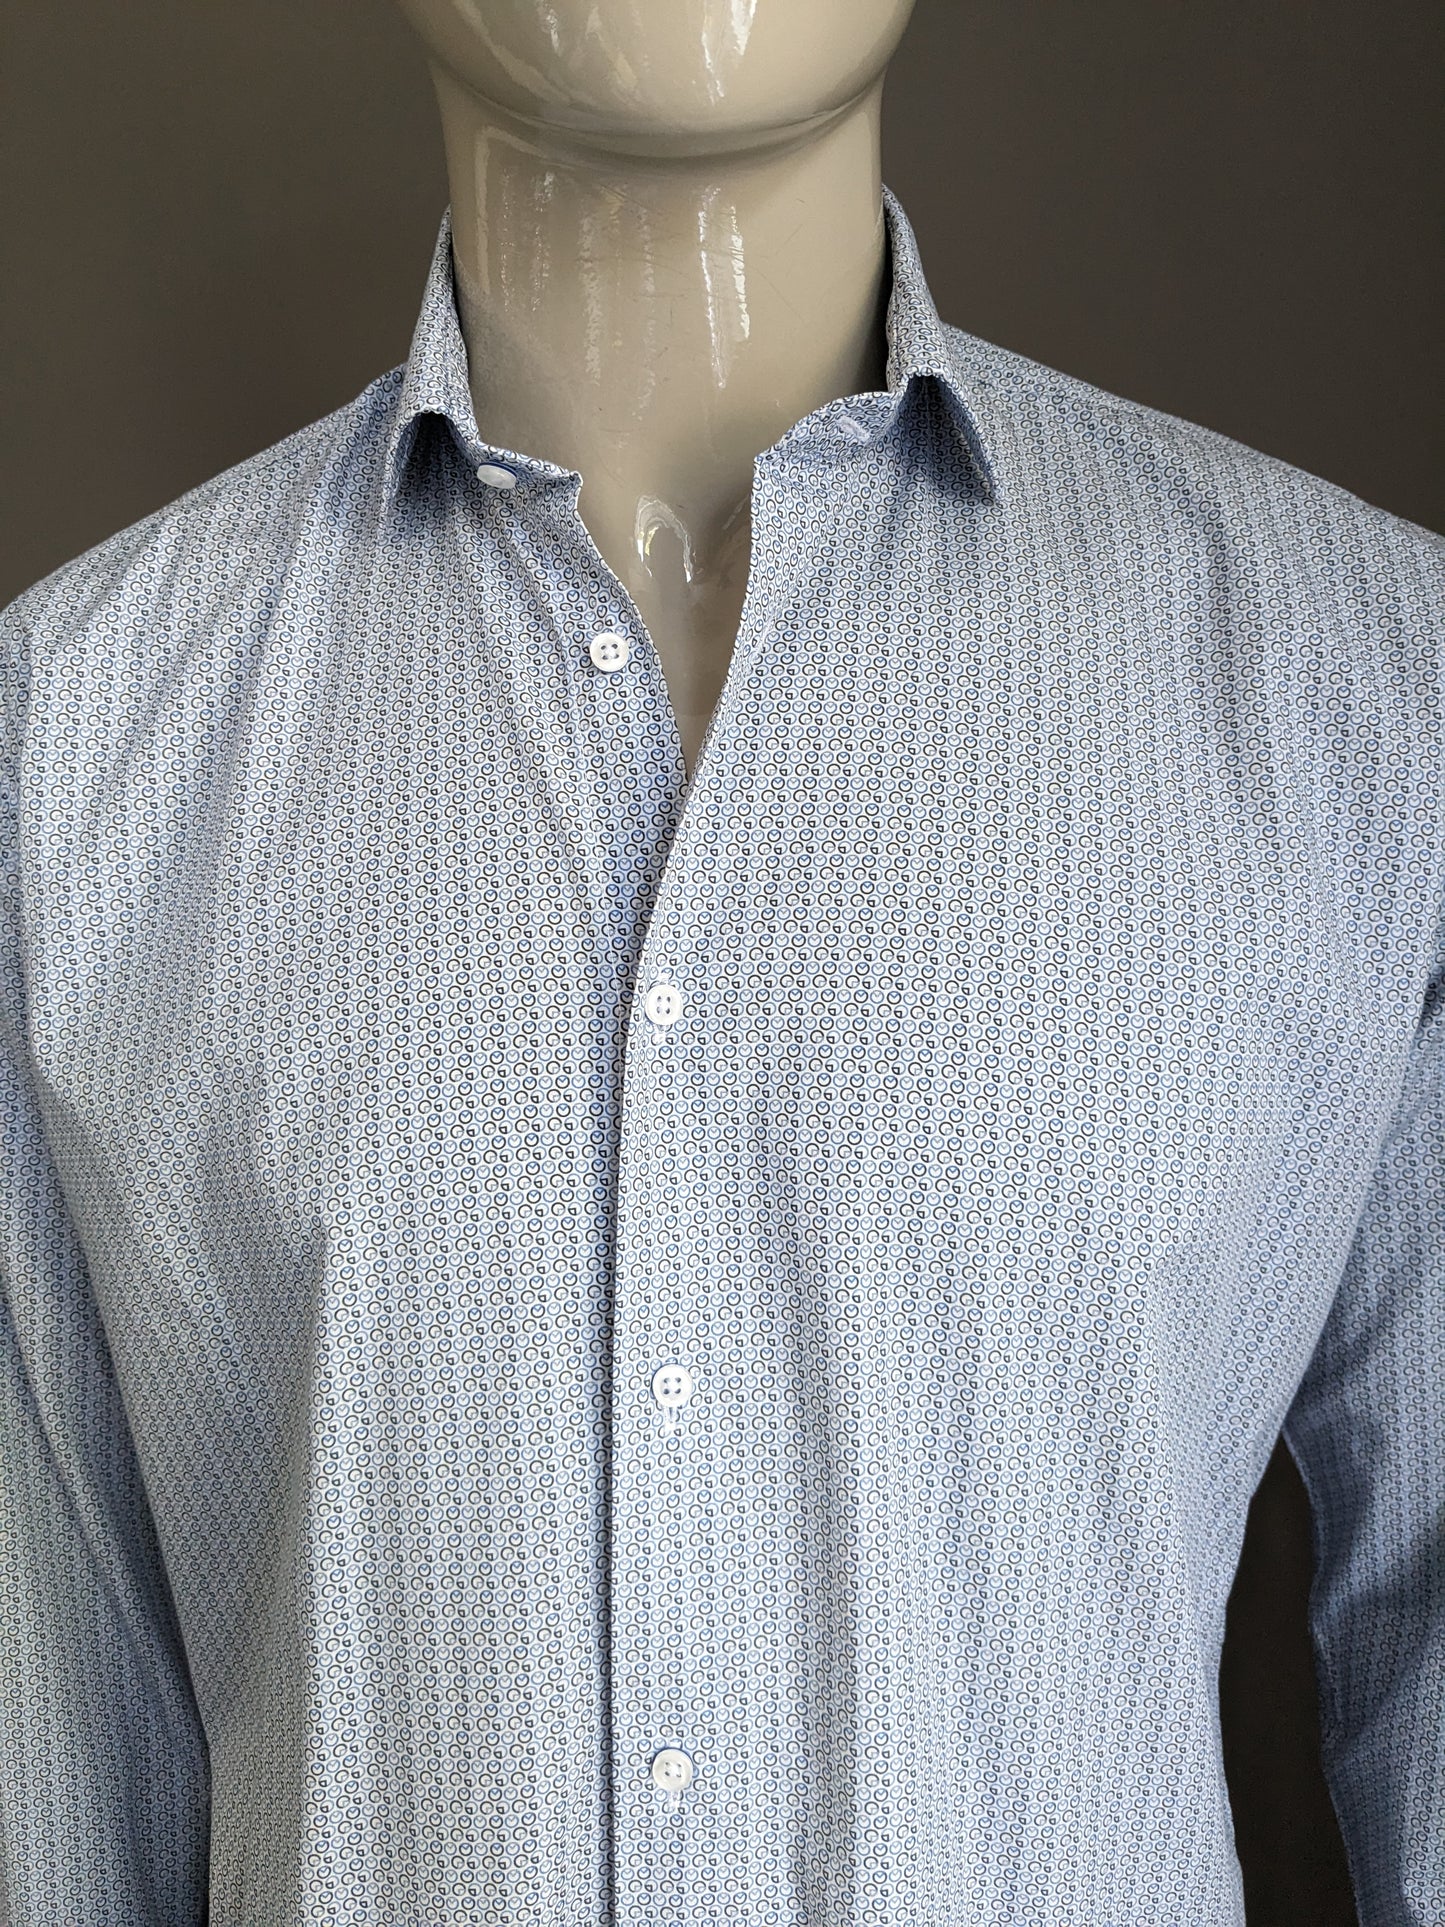 Max Goodman Shirt. Blaubrauner weißer Druck. Größe L.